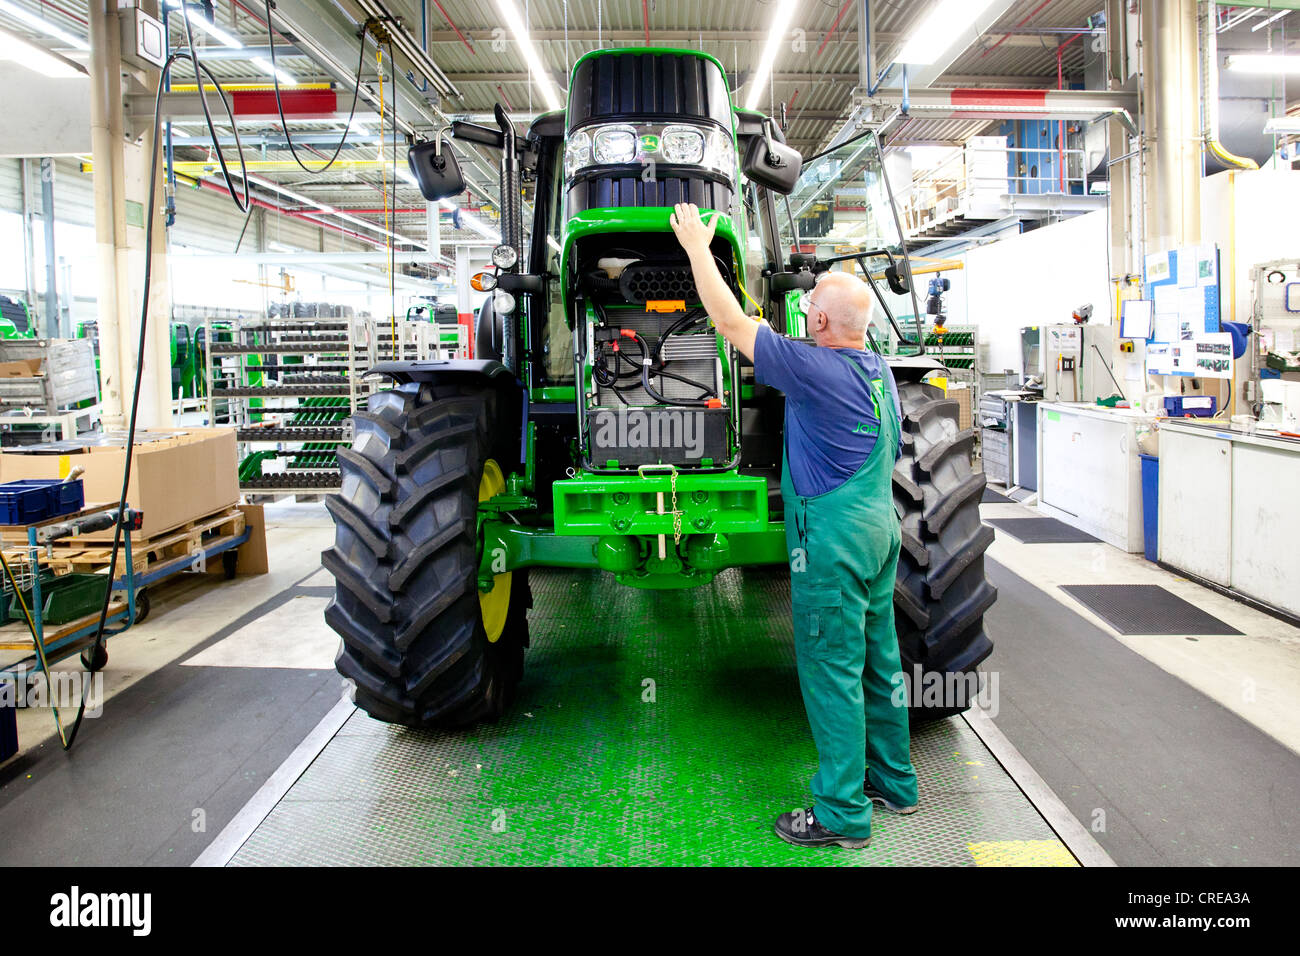 https://c8.alamy.com/compde/crea3a/batterie-kontrolle-im-bereich-traktor-produktion-in-der-europazentrale-von-der-amerikanische-landmaschinen-crea3a.jpg